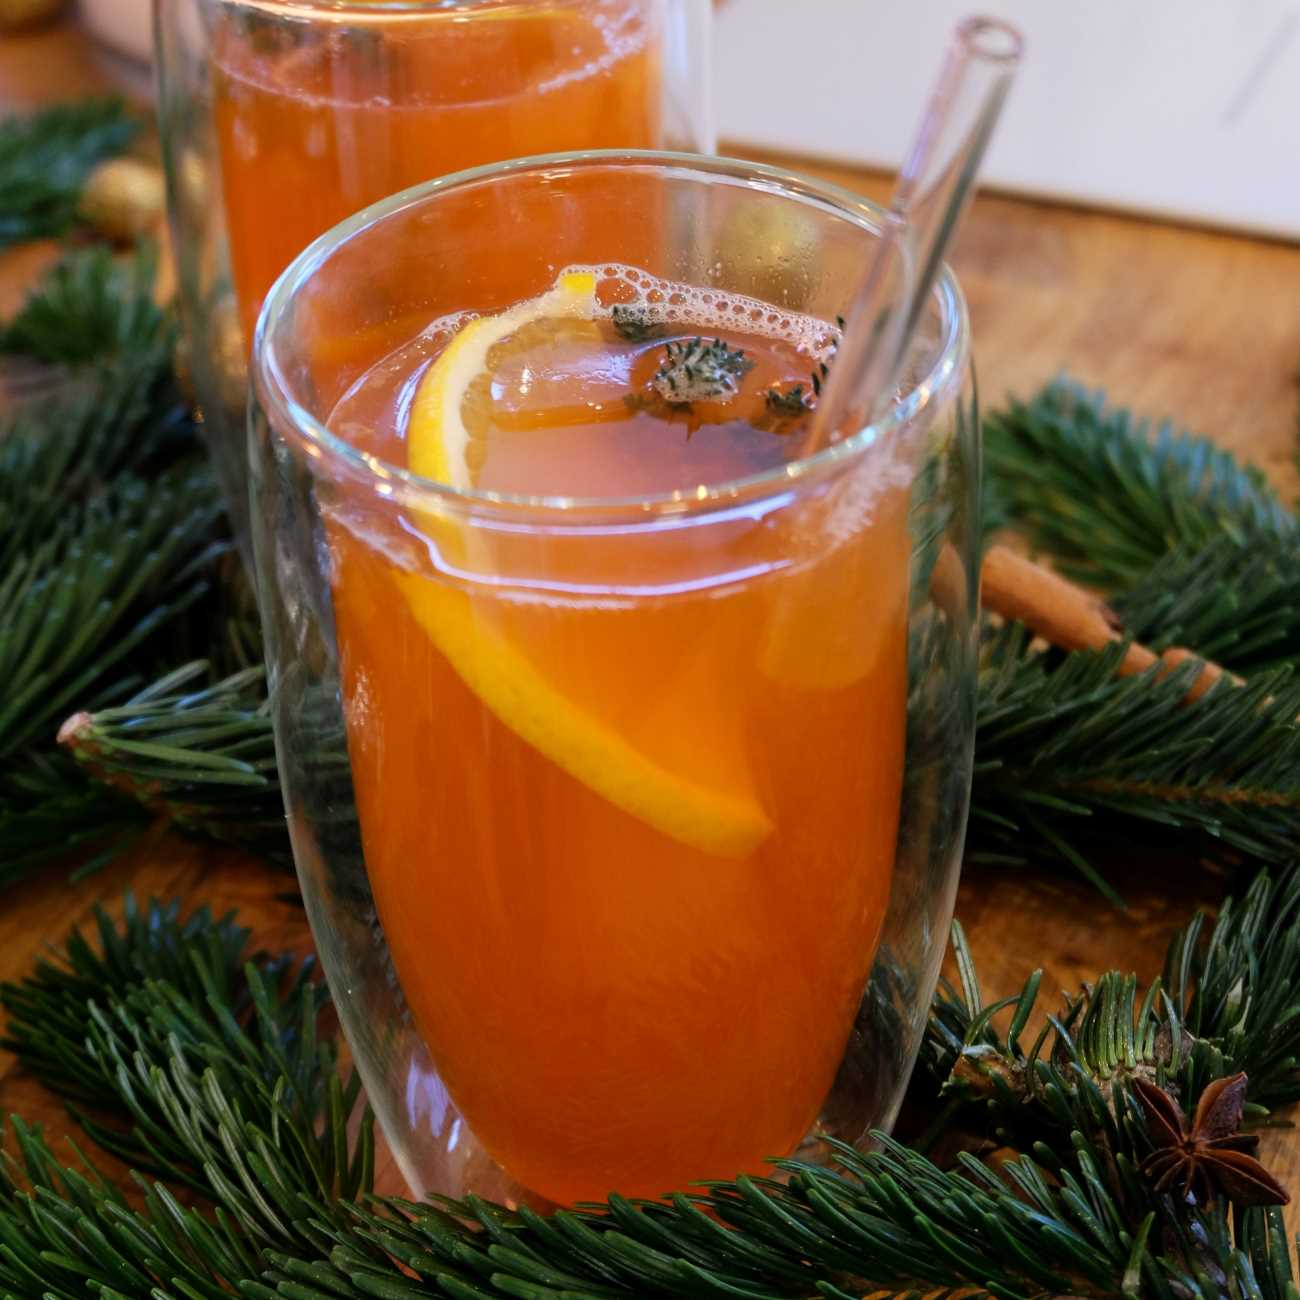 Hot Aperol wird in einem doppelwandigen Glas mit Orange und Thymian gezeigt.